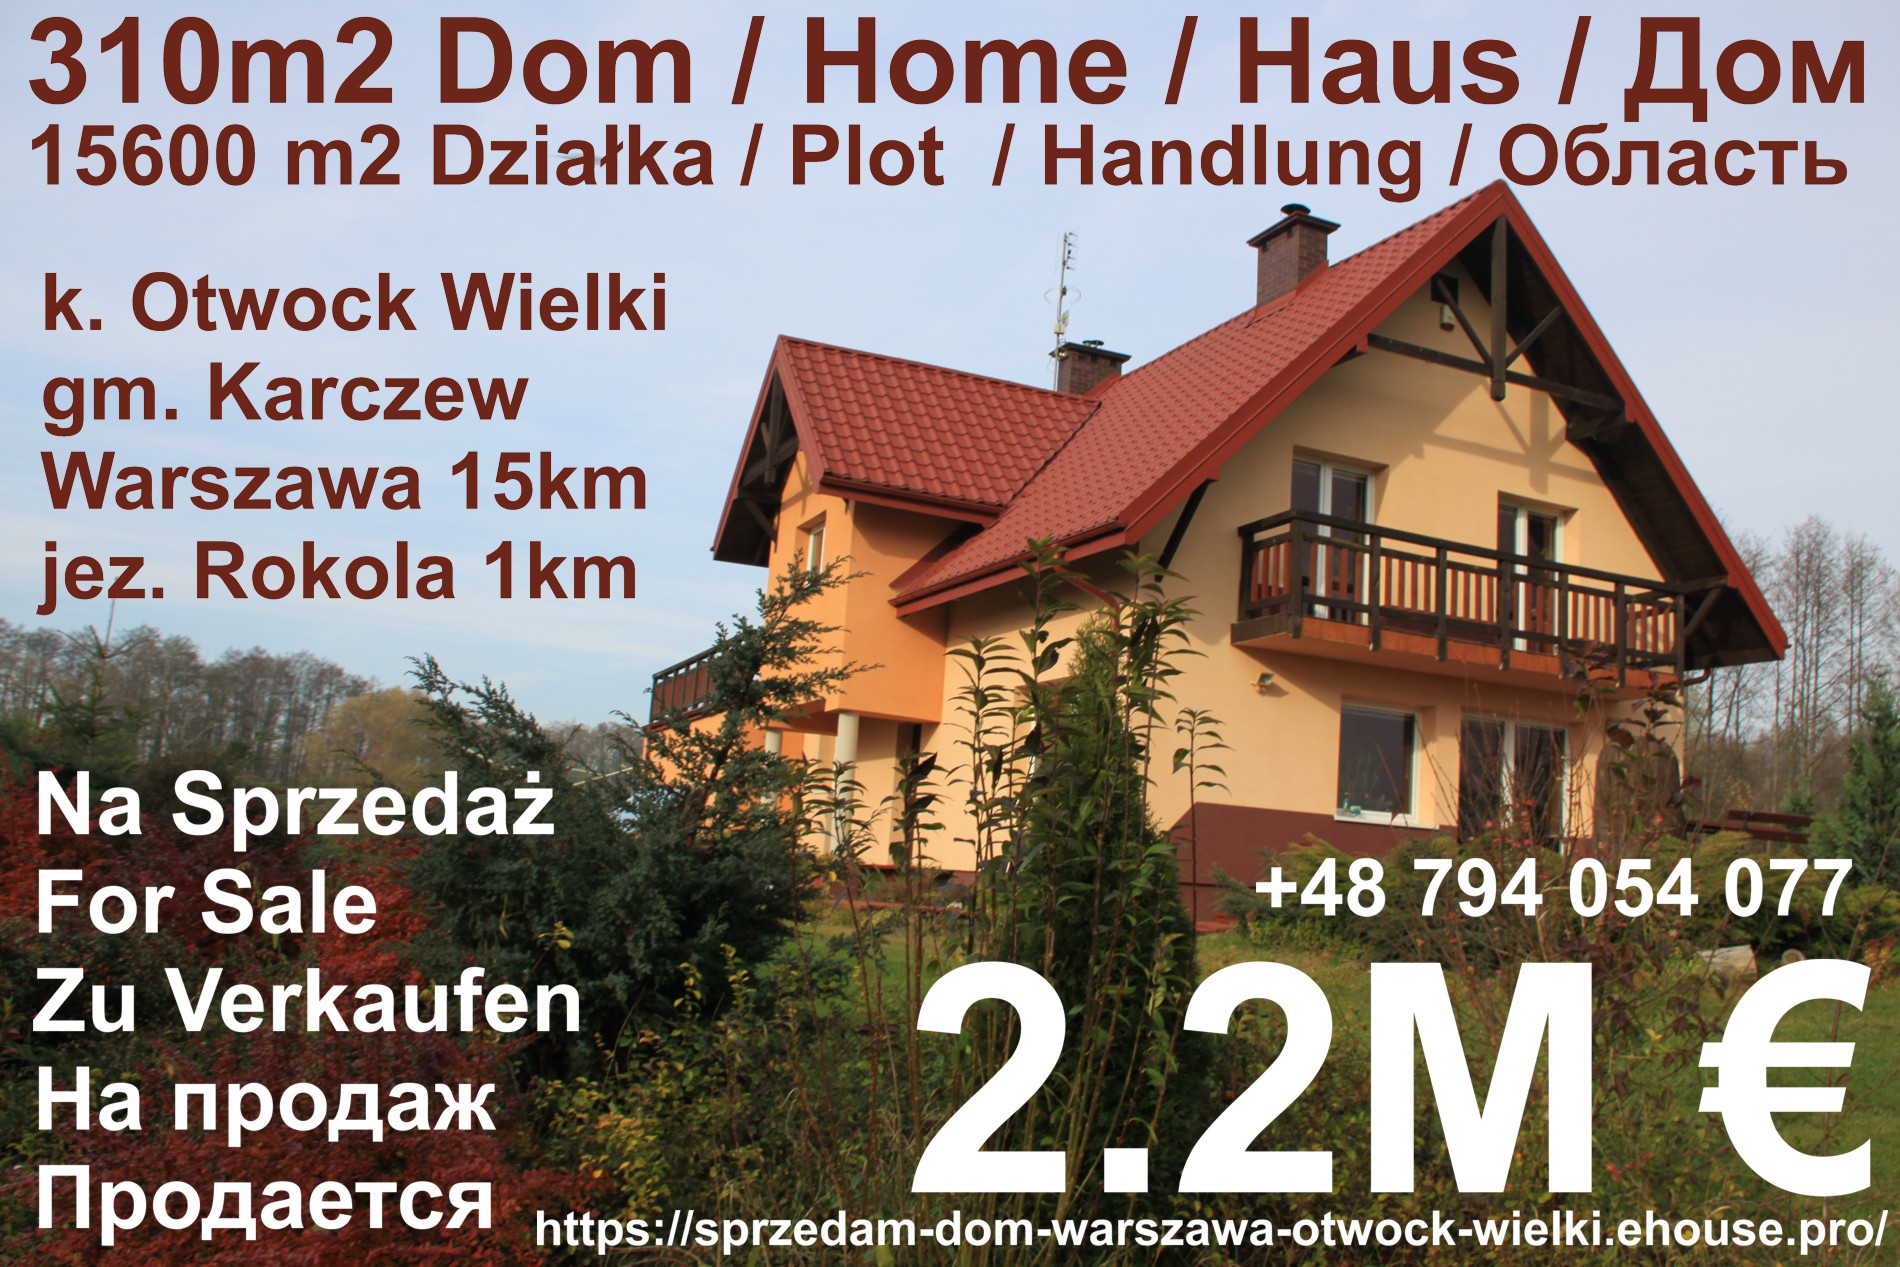 sprzedam dom 310m2 k. Otwock Wielki, gm. Karczew, pow. Otwock, Warszawa (32 km) na zjawiskowej działce 15600 m2 w otulinie NATURA-2000